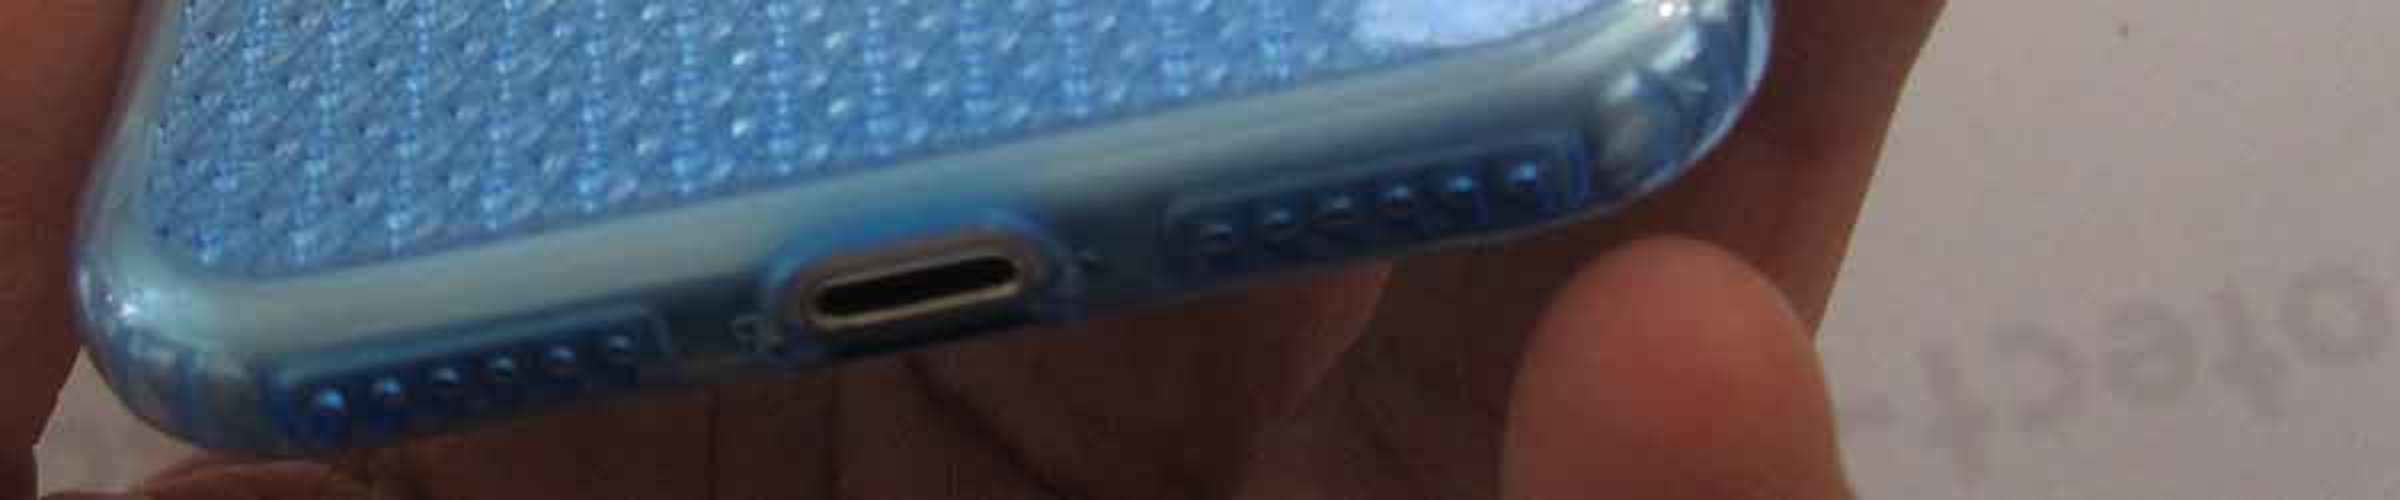 Обзор блестящего градиентного чехла для iPhone 7/8 7Plus/8Plus